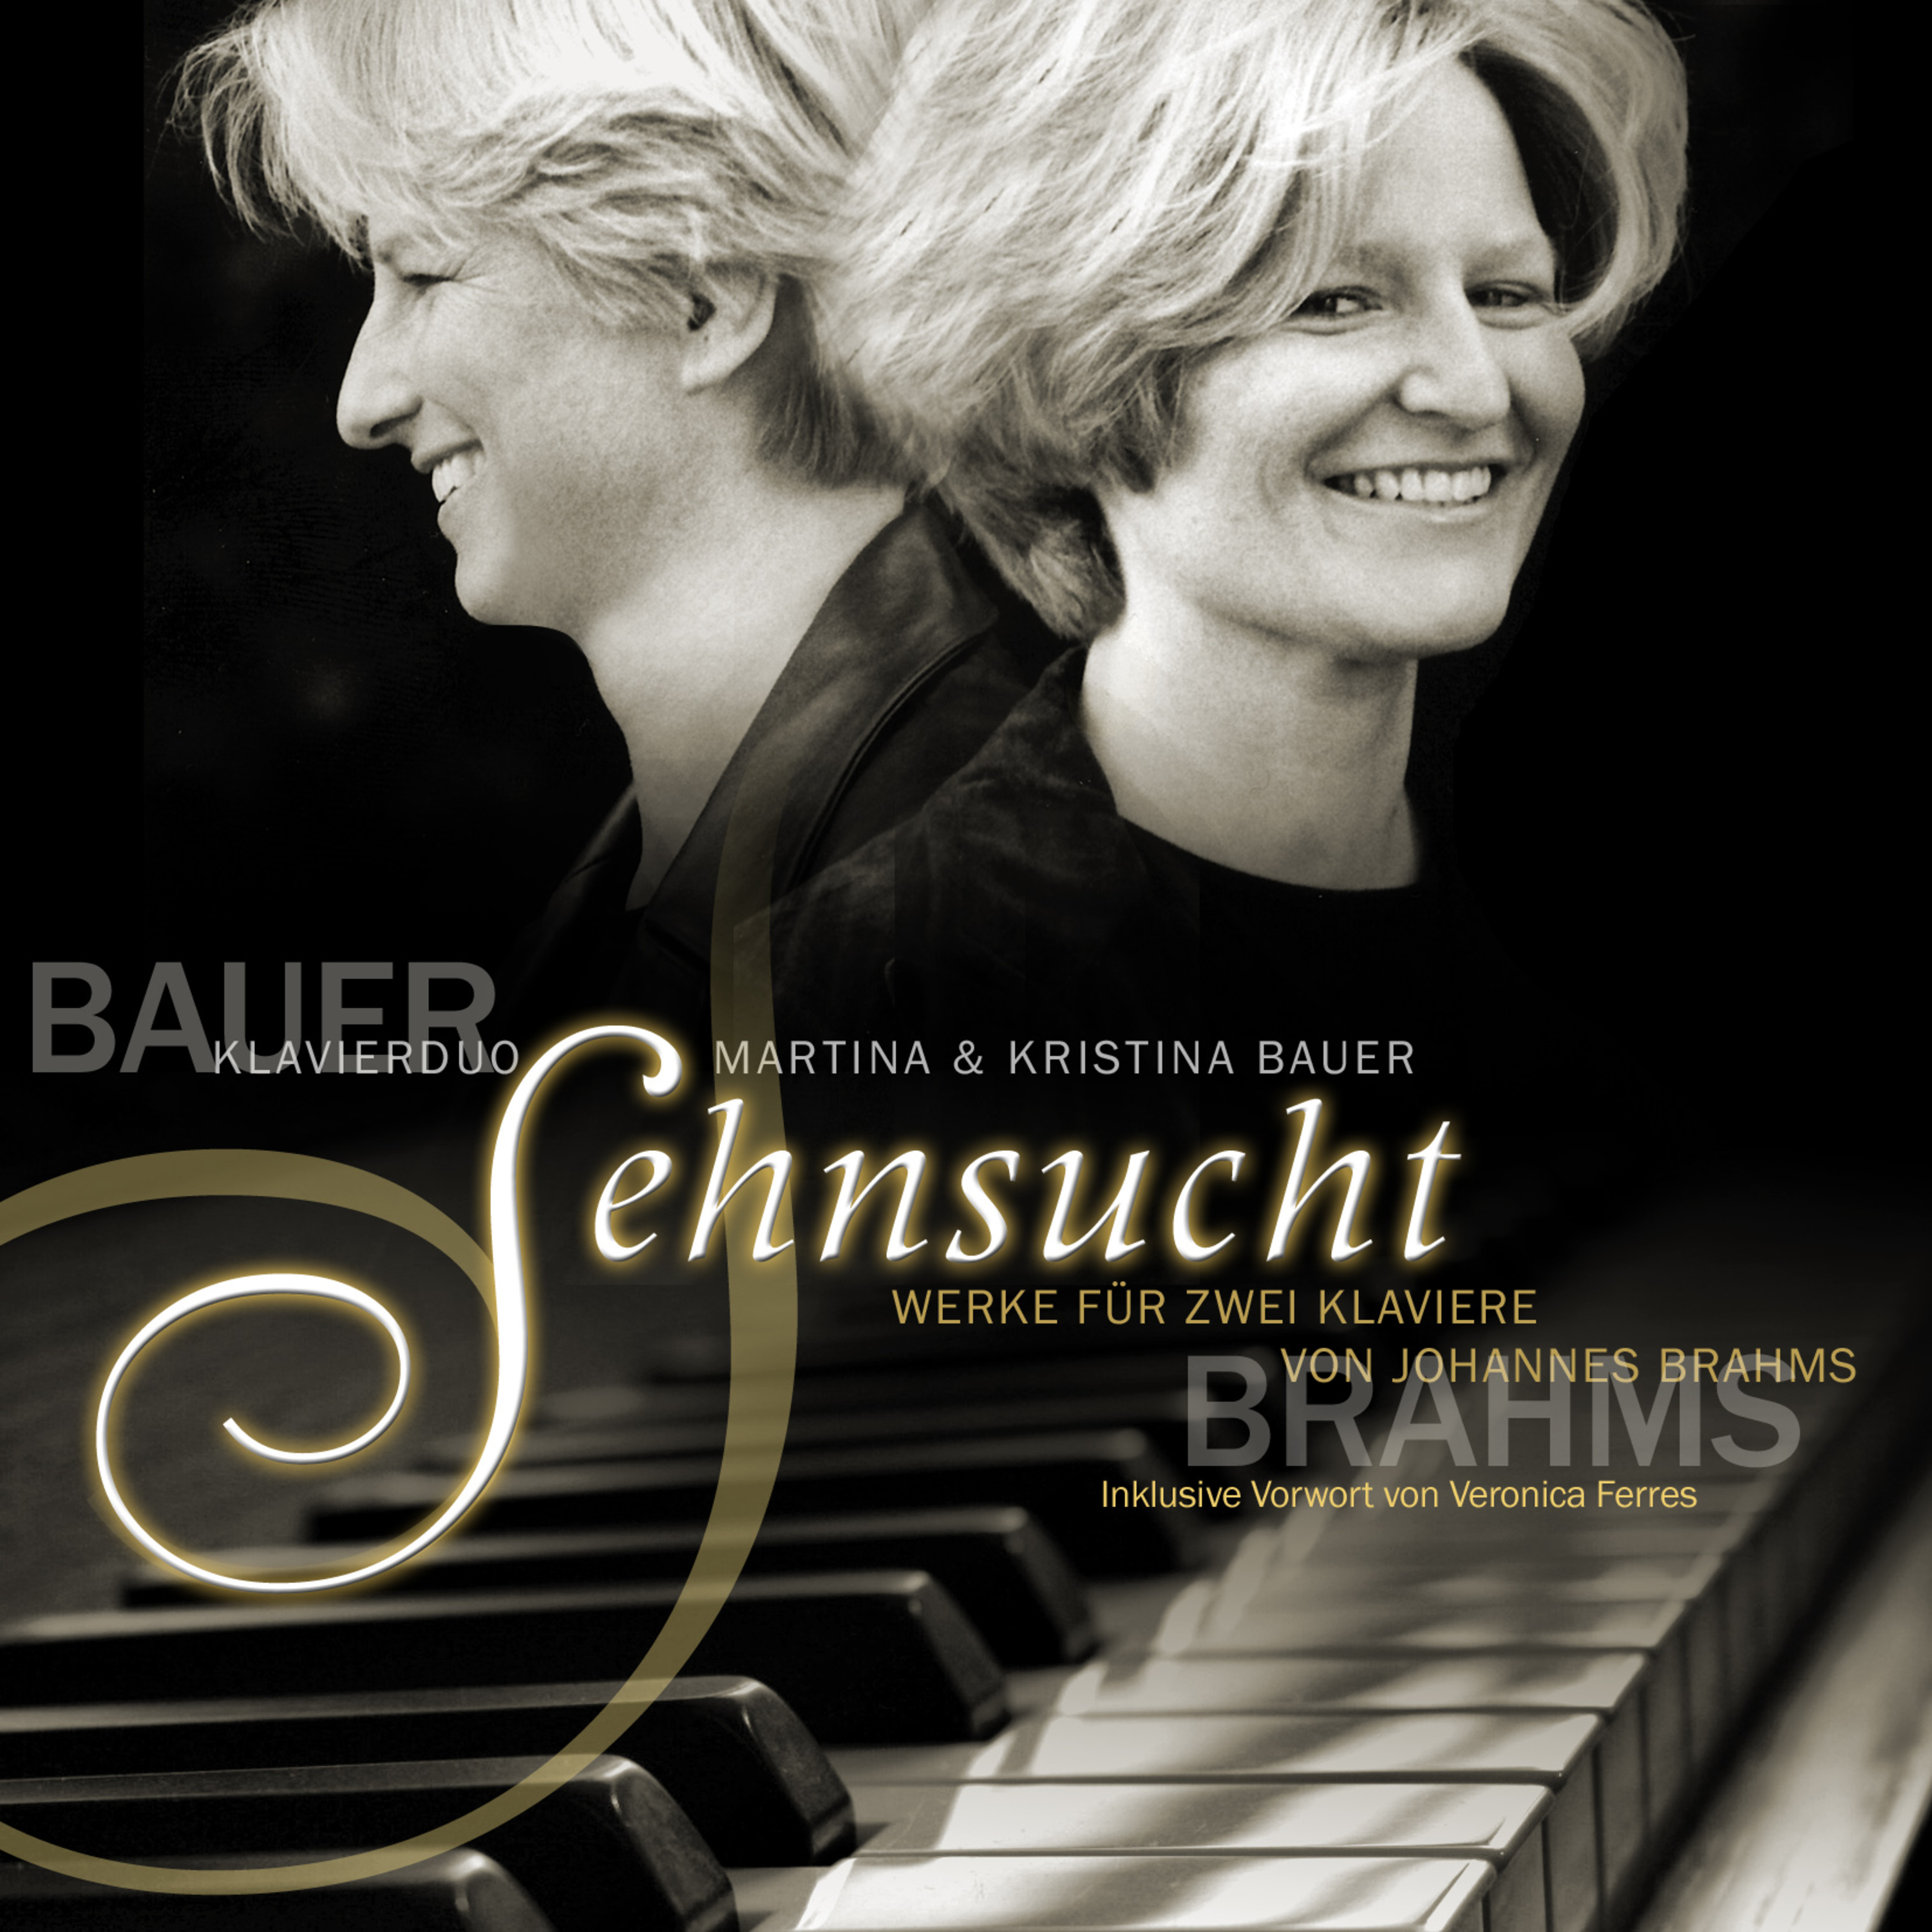 Sehnsucht  Werke fü r zwei Klaviere von Johannes Brahms